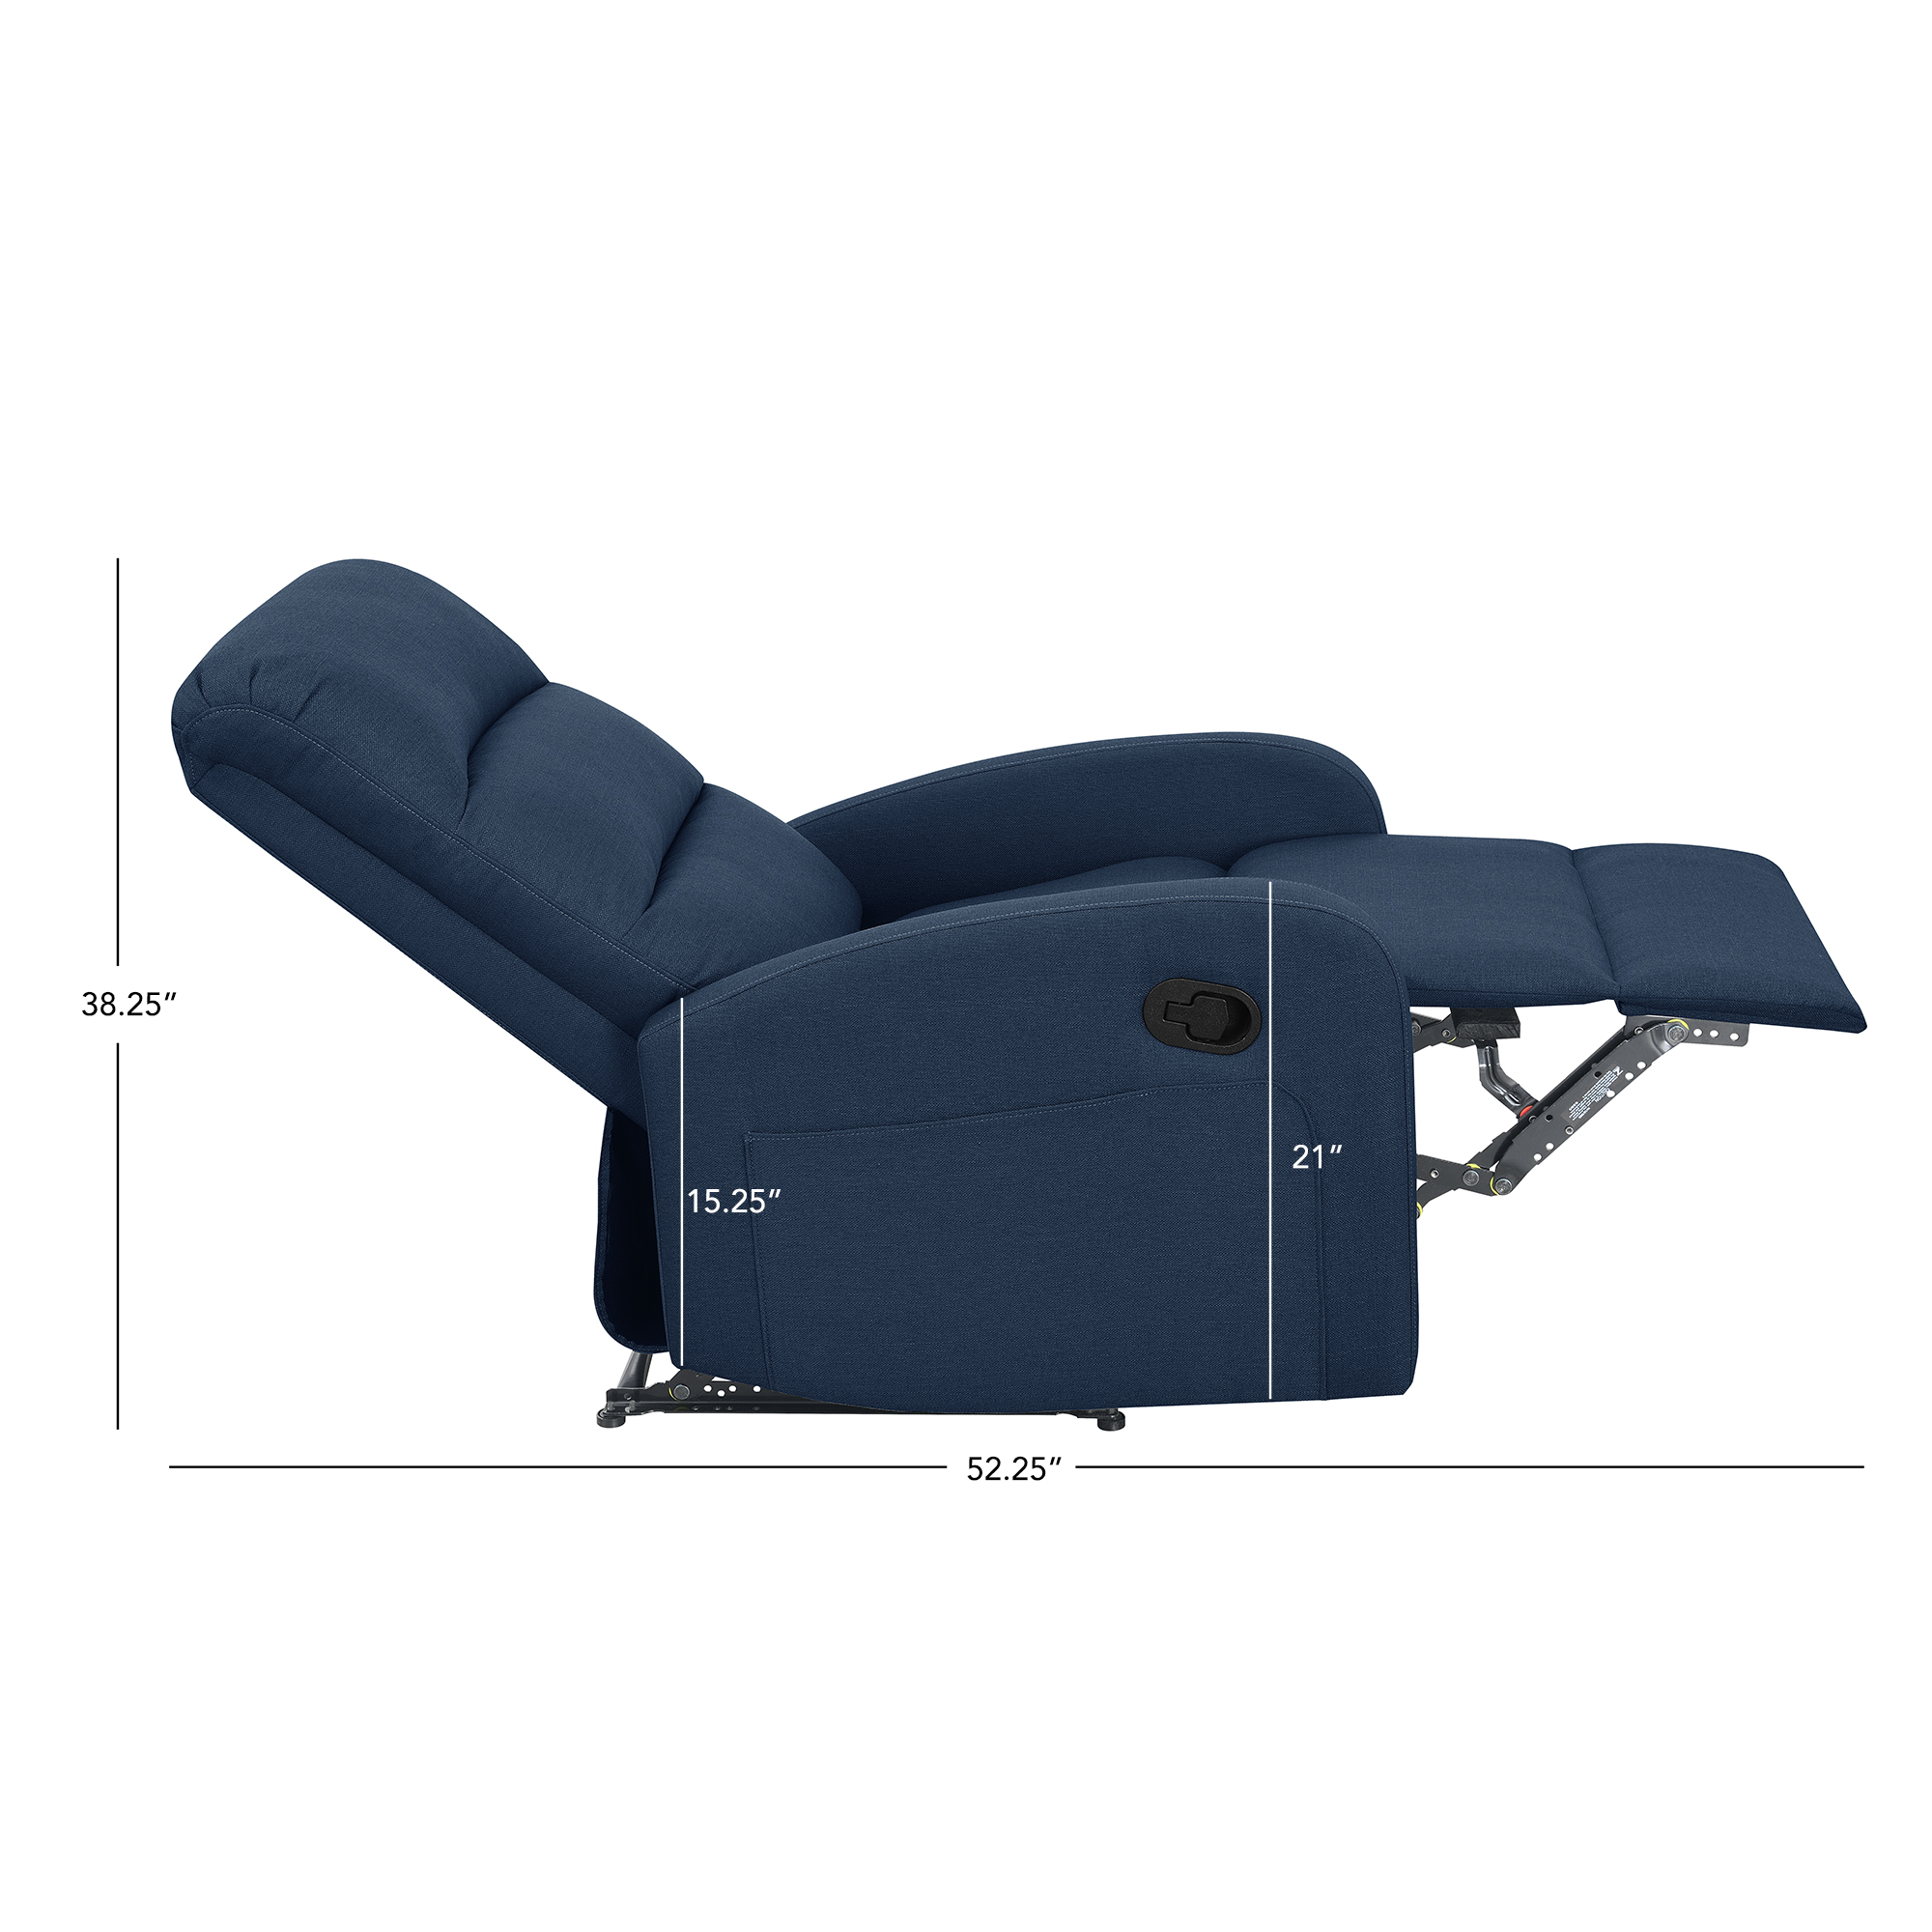 Relaxing Navy Blue Recliner Chair